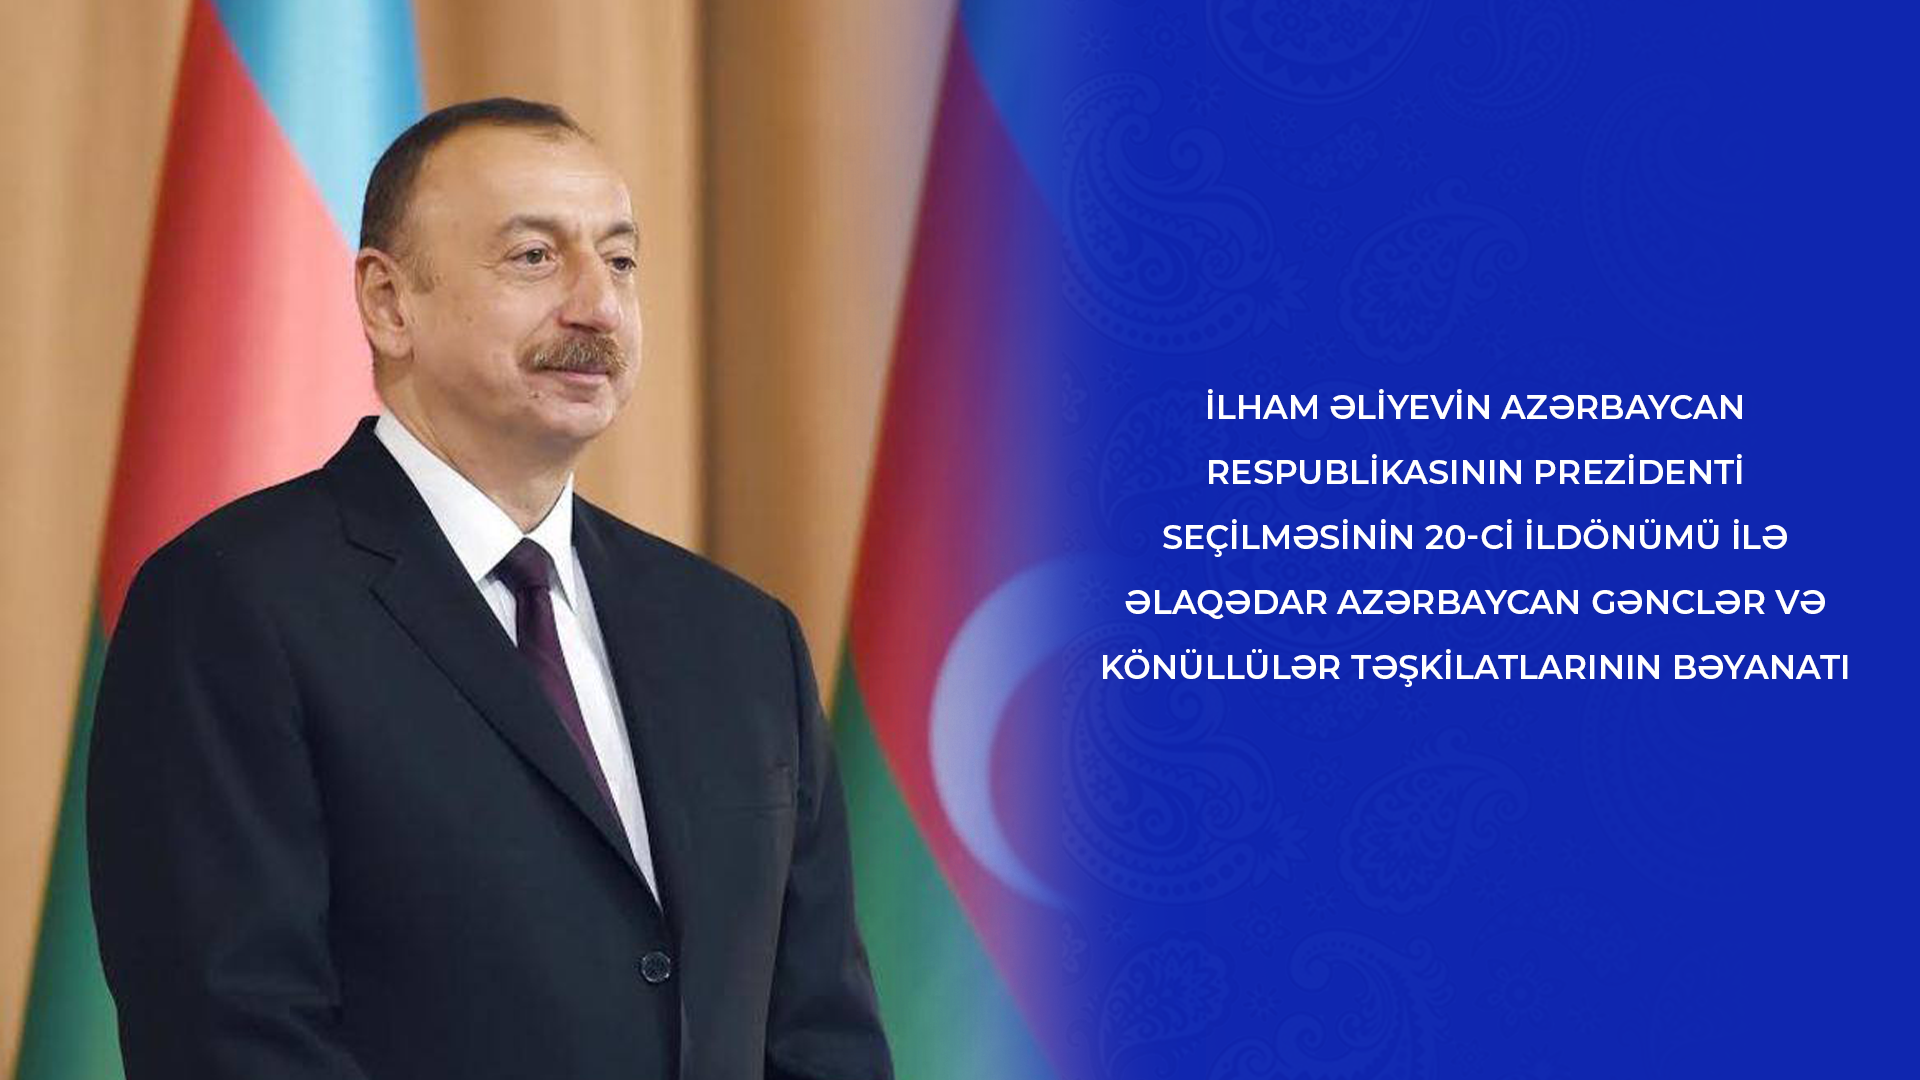 Azərbaycan gənclər və könüllülər təşkilatlarının bəyanatı